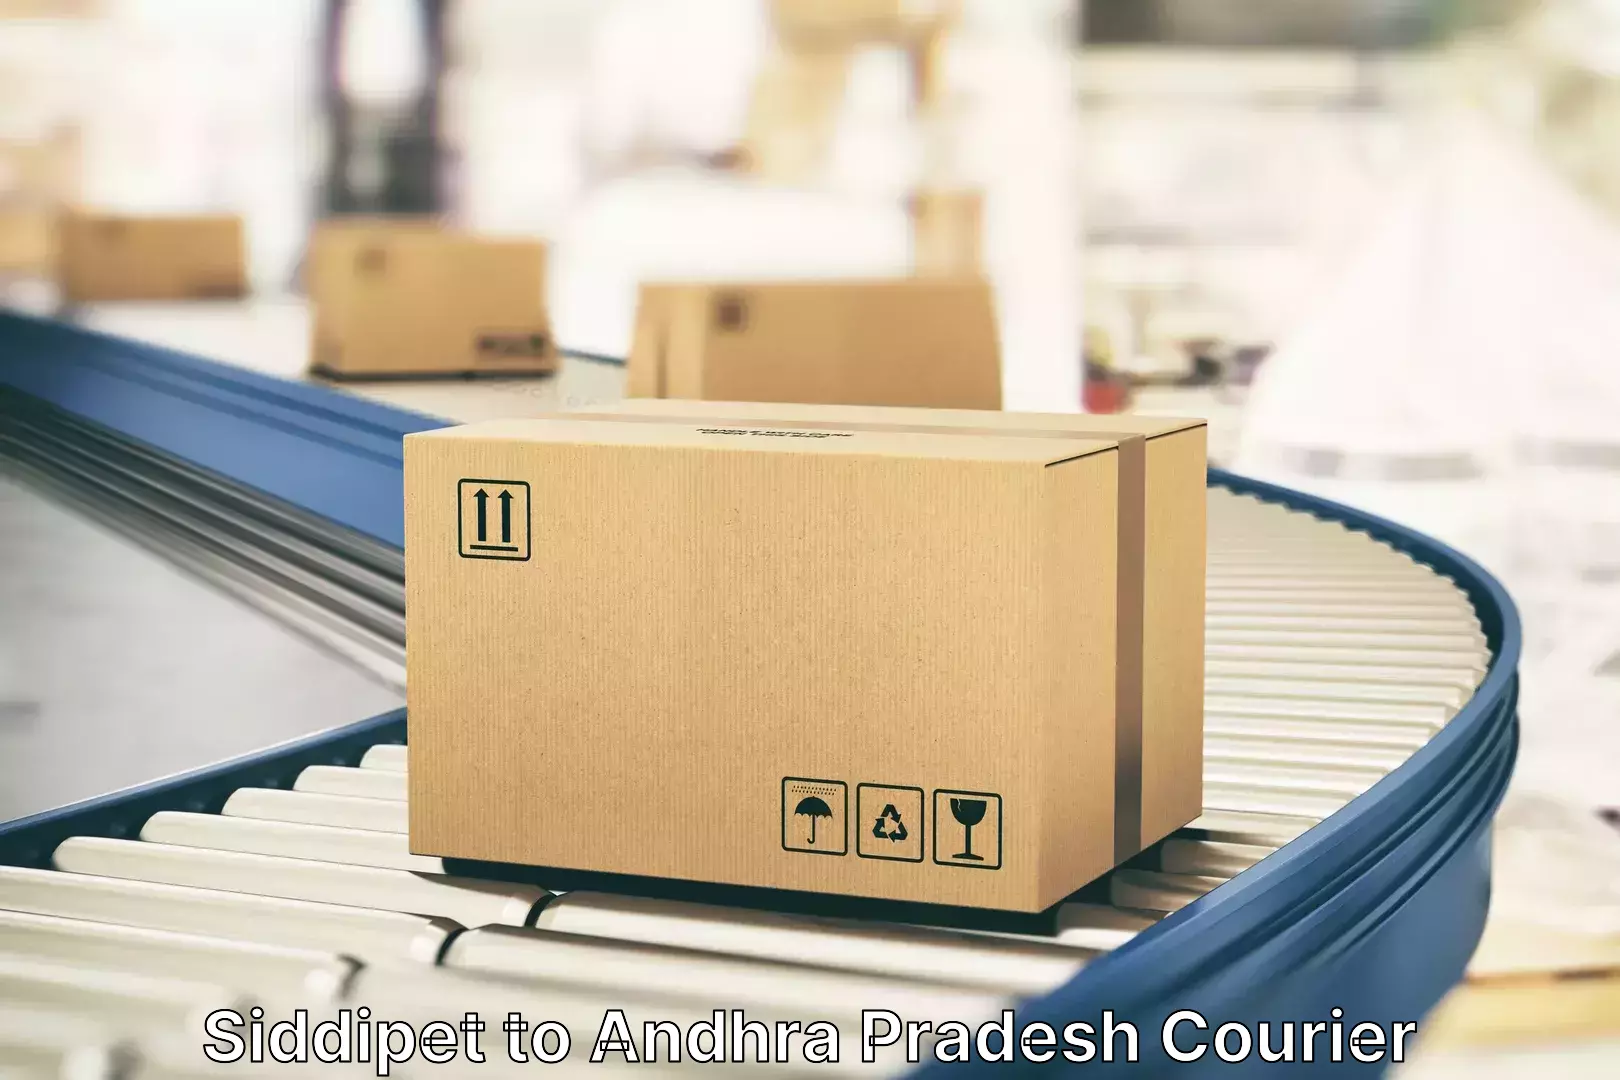 Express baggage shipping Siddipet to Andhra Pradesh